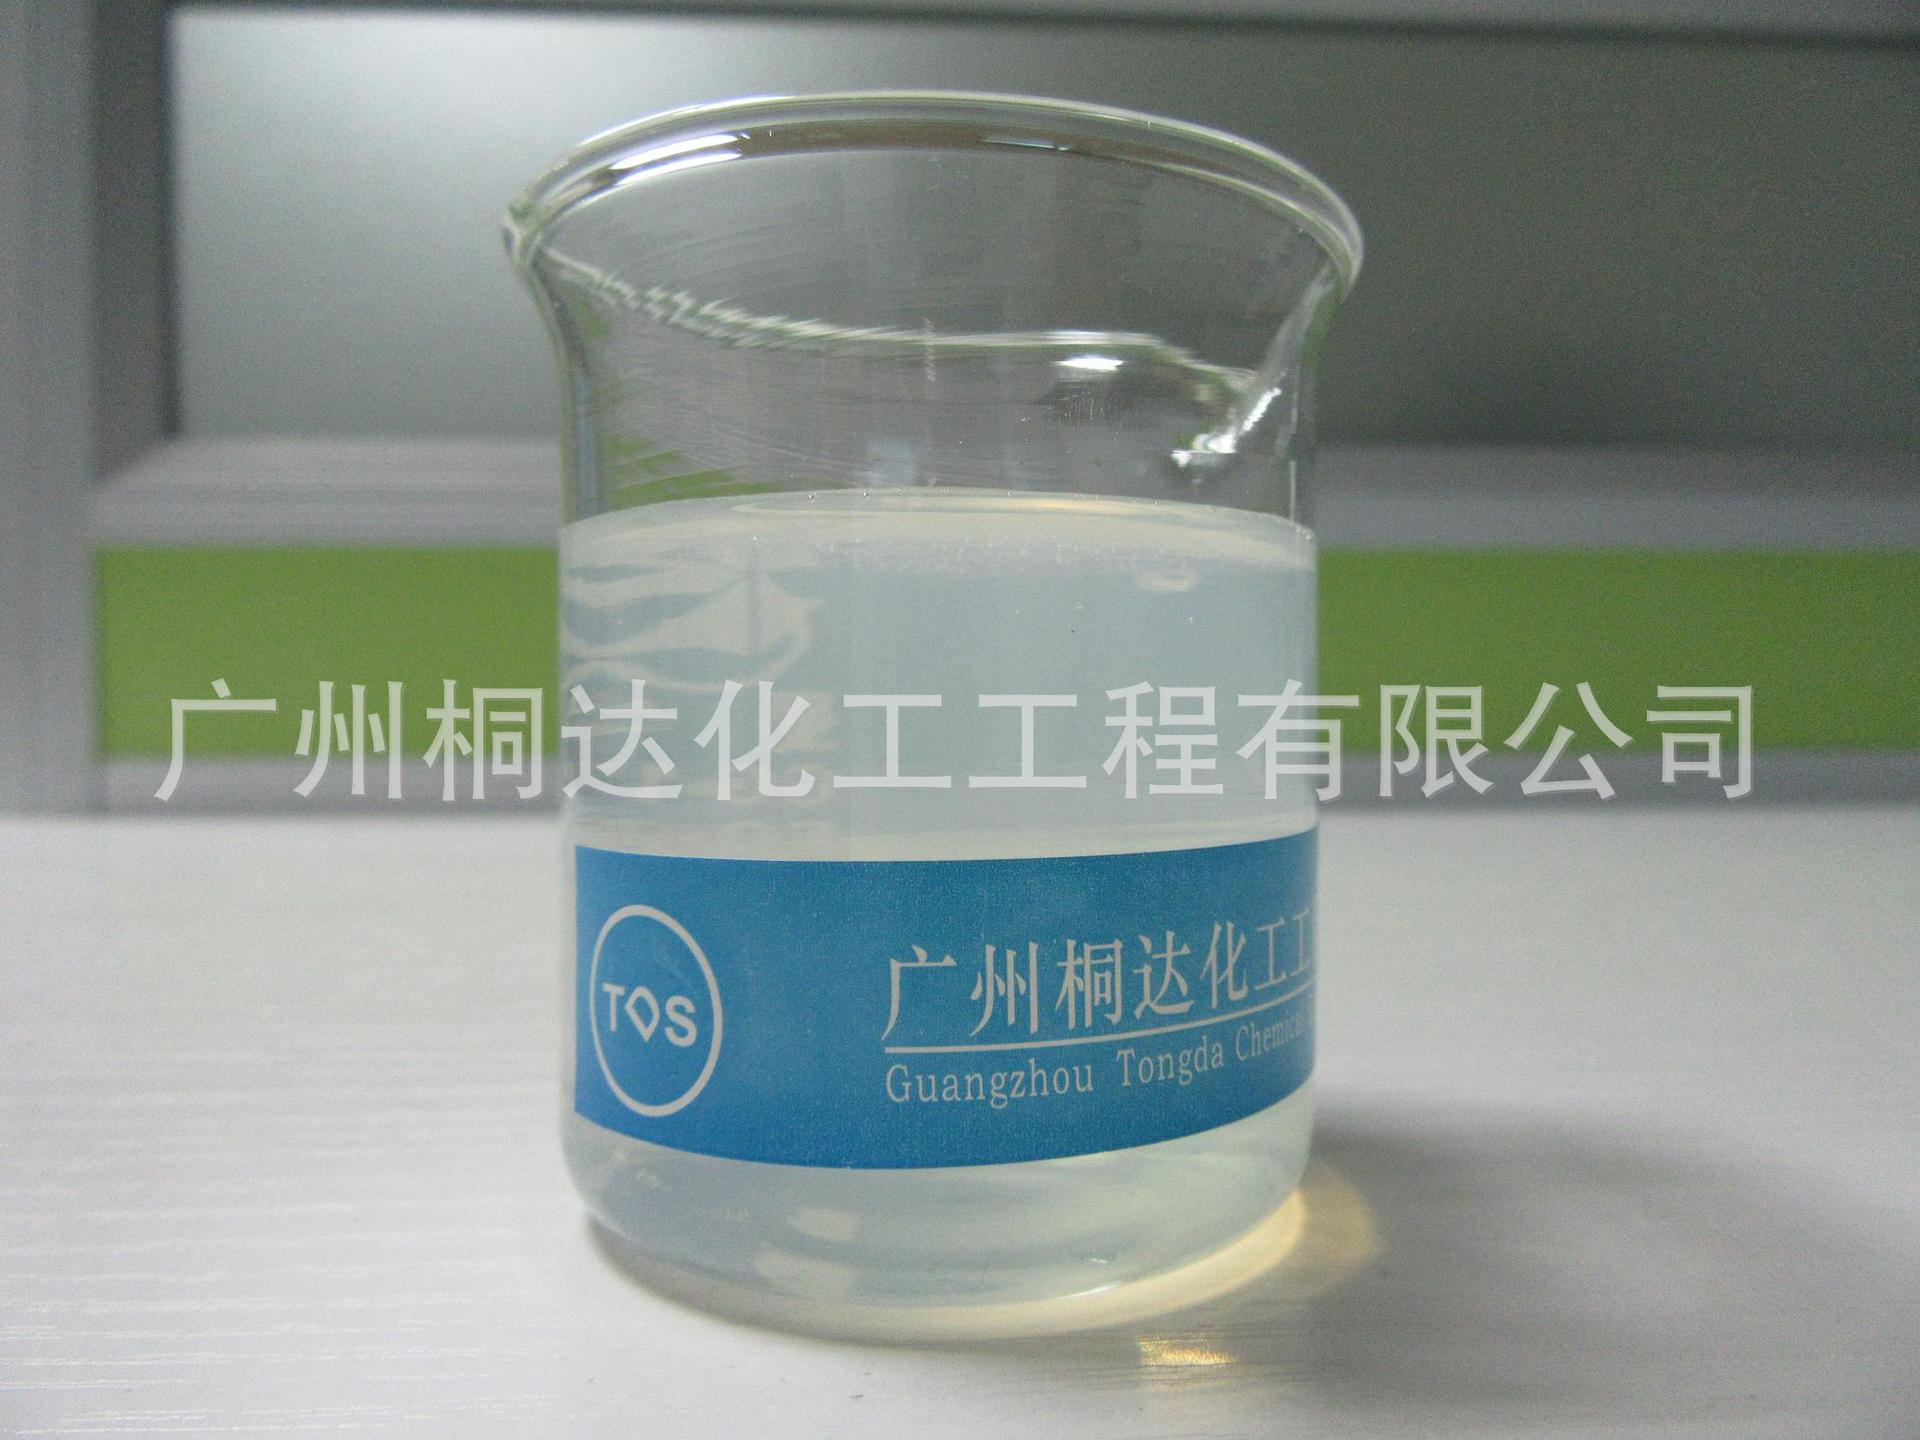 RRJ-211 柔软剂、织物超蓬松柔软剂 适用于纯棉、涤纶、涤棉等图片